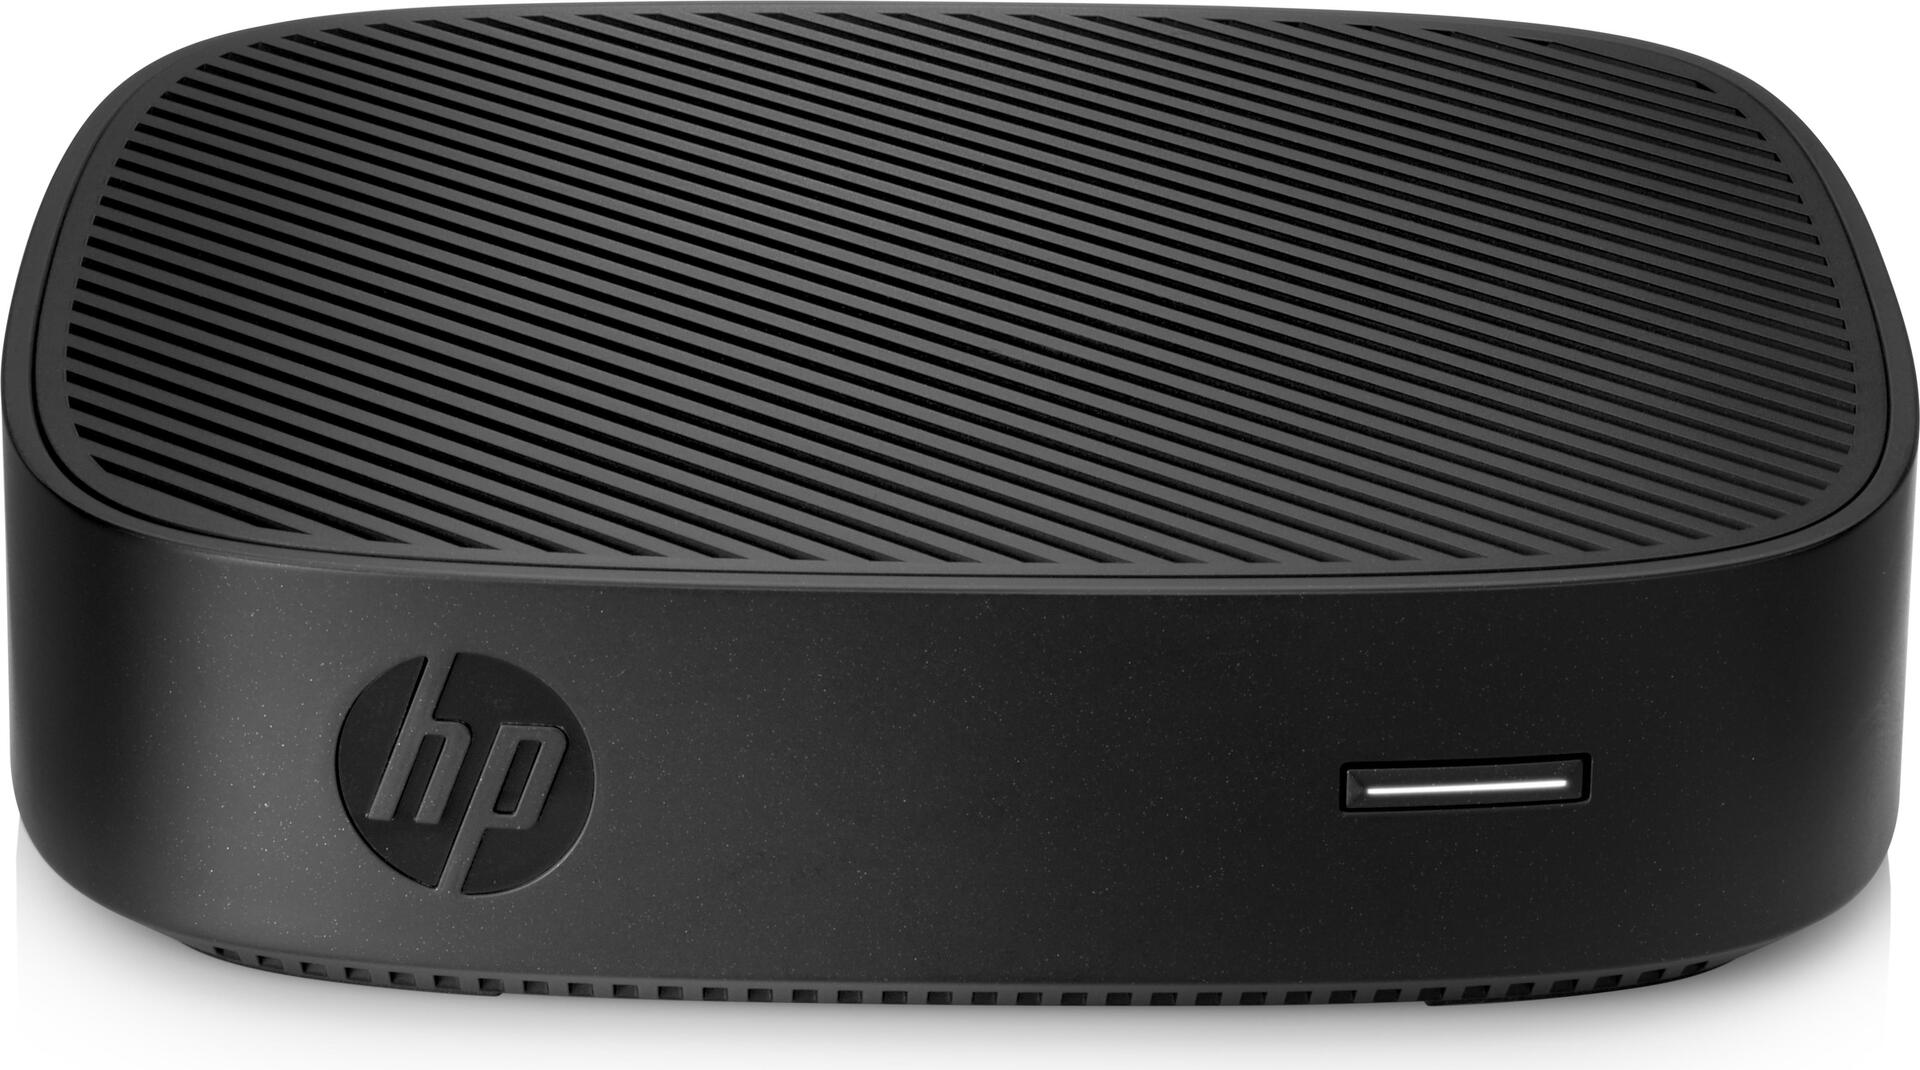 HP t430 - Thin Client - DTS - 1 x Celeron N4000 / 1.1 GHz - RAM 4 GB - Flash - eMMC 32 GB - UHD Graphics 600 - GigE, Bluetooth 5.0 - WLAN: 802.11ac, Bluetooth 5.0 - Windows 10 IOT Enterprise für Thin Clients 64-Bit - Monitor: keiner - Tastatur: Deuts